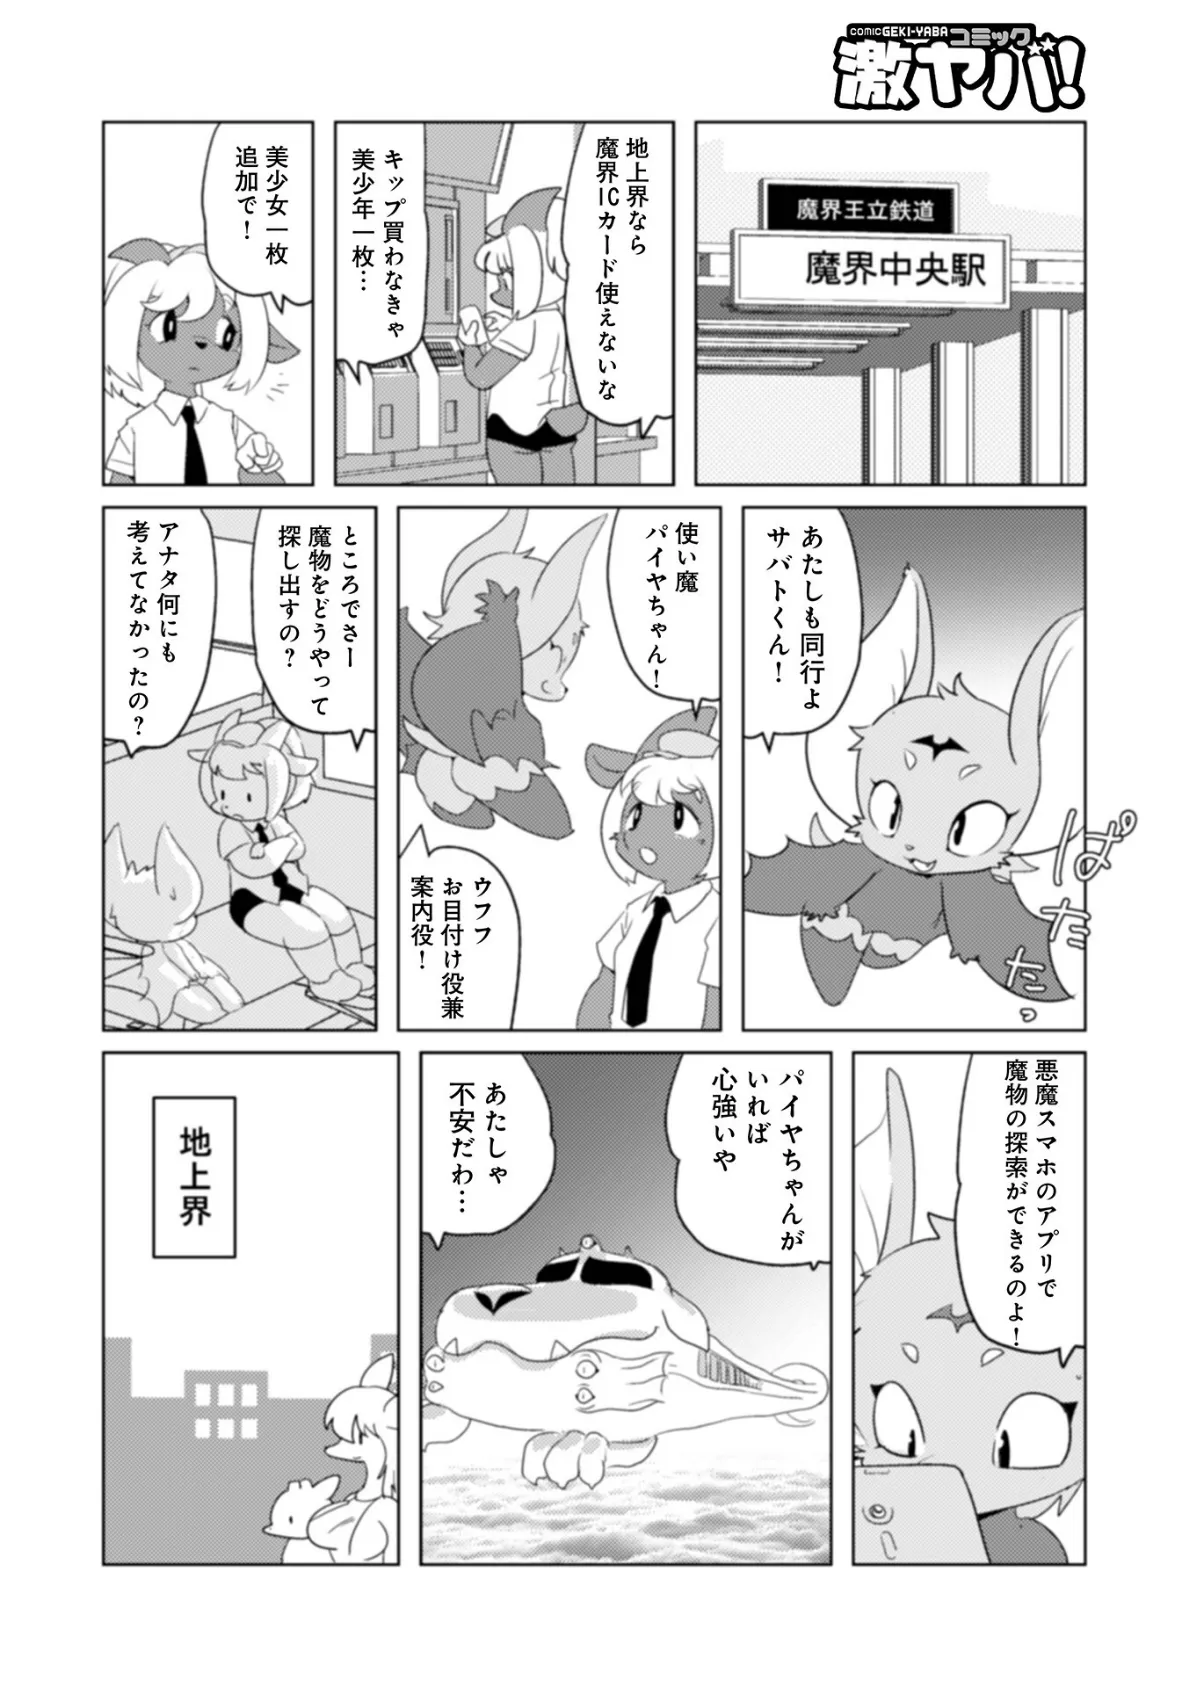 魔界探偵サバトくん第1巻 6ページ